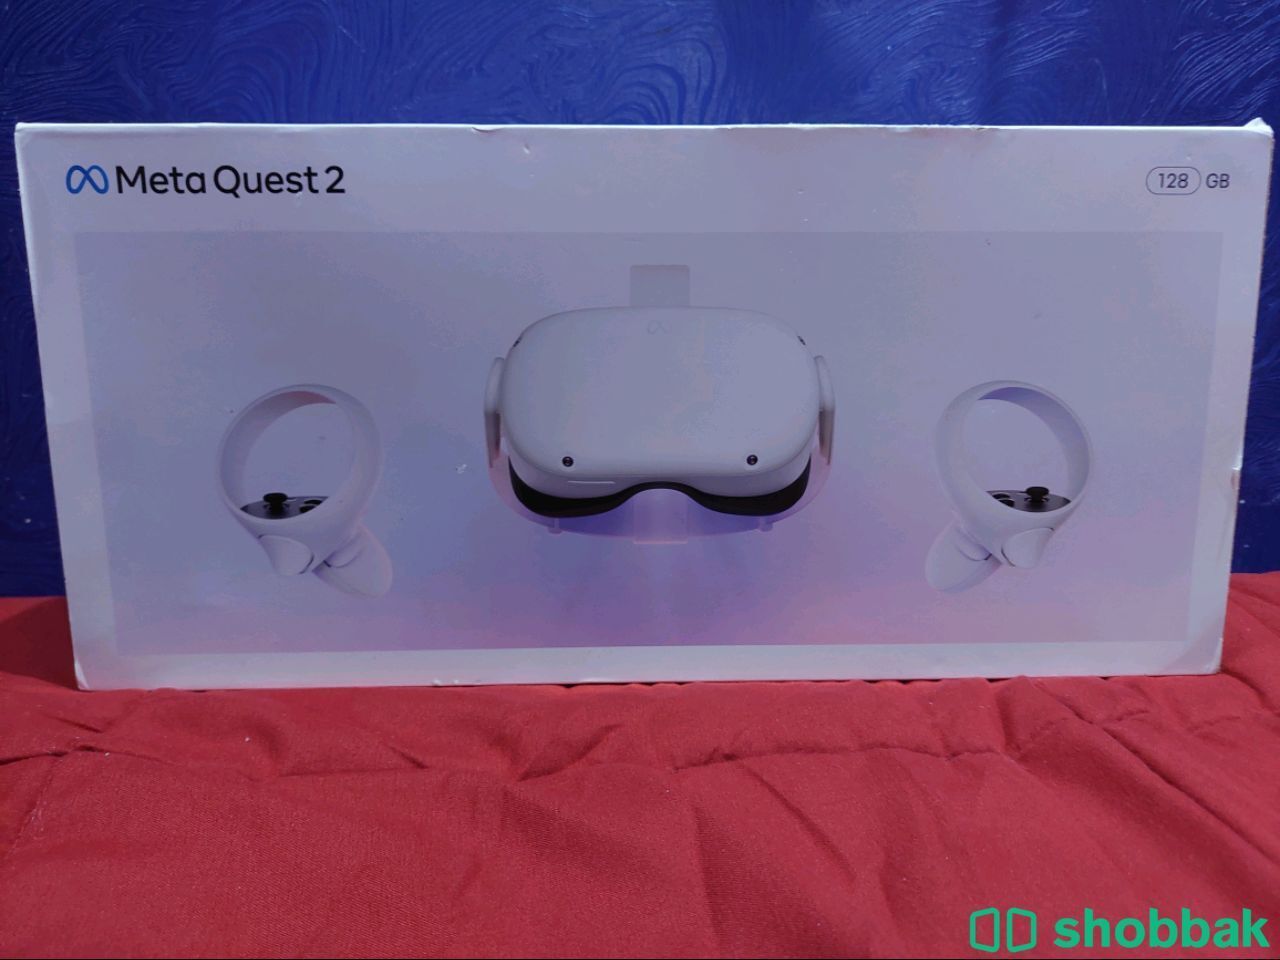 في ار كويست 2 جديد ما انفتح الجهاز VR Quest 2 Shobbak Saudi Arabia